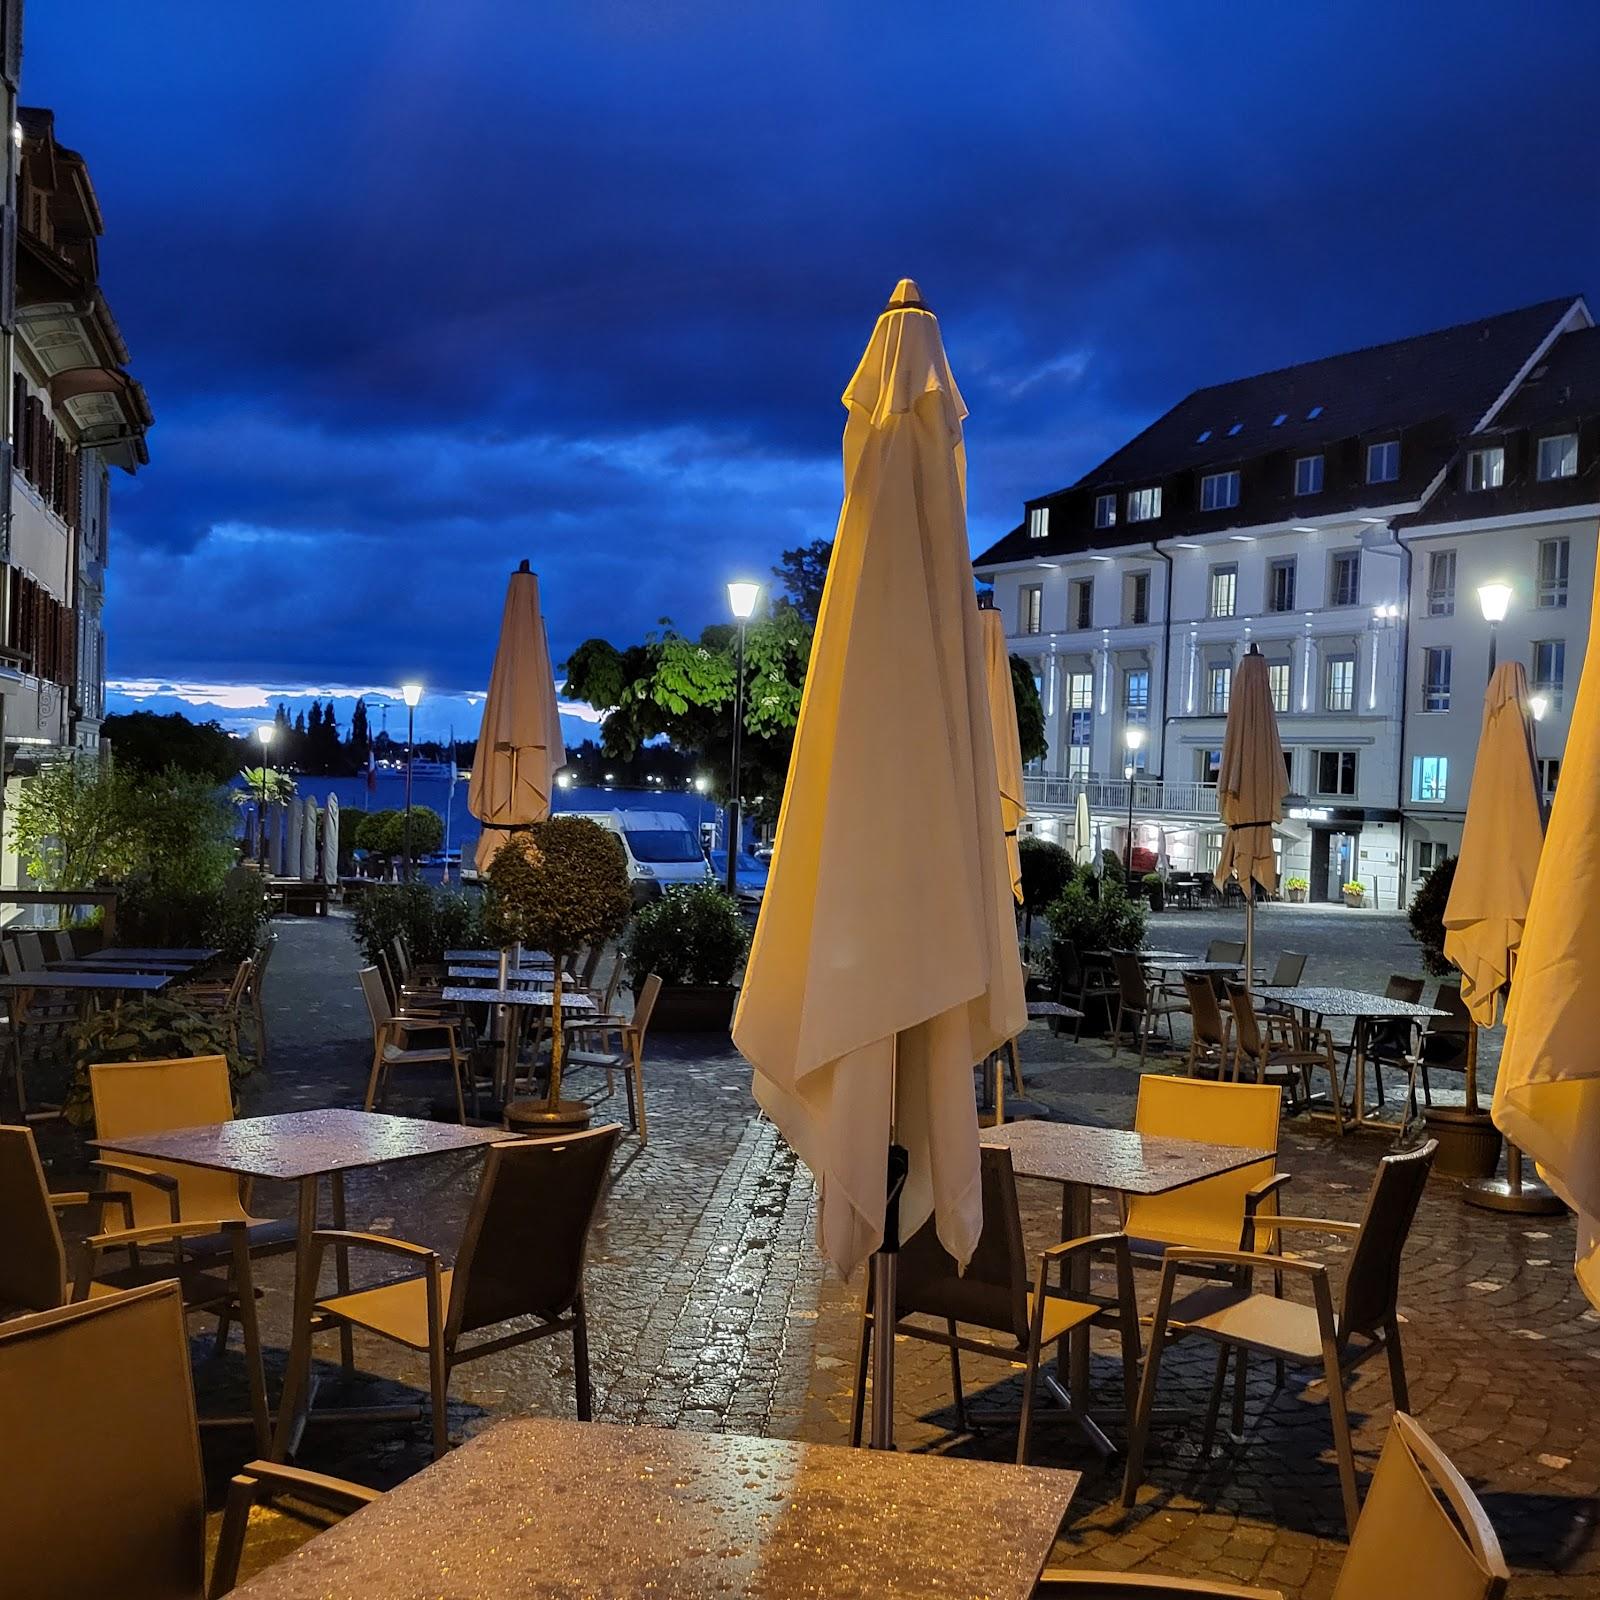 Restaurant "Restaurant Widder" in Zug